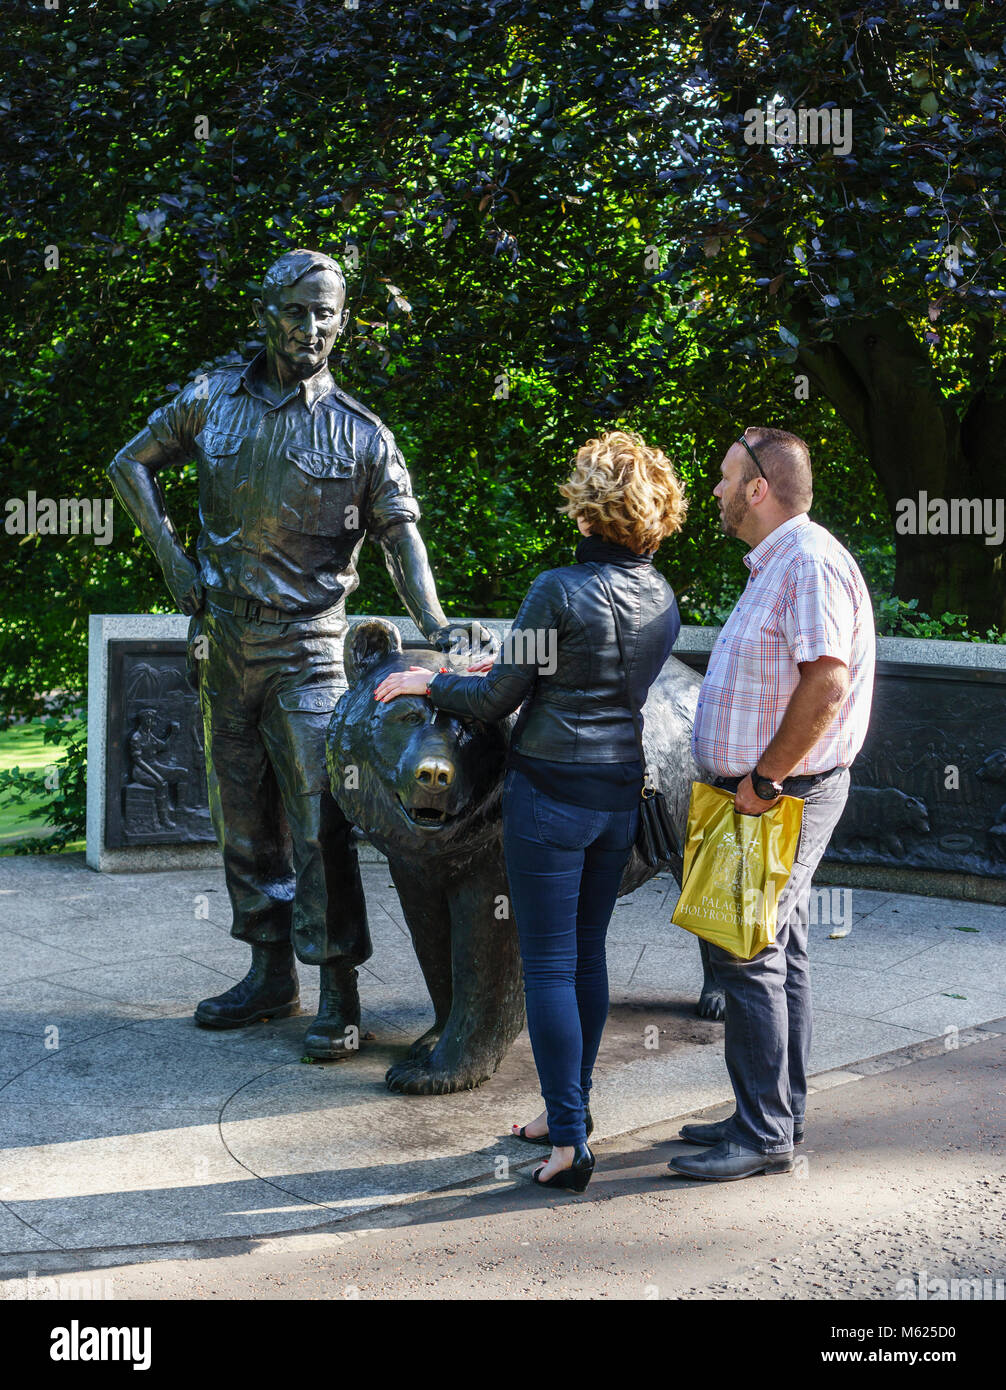 Ecosse - Edimbourg. Wojtek, le célèbre ours polonais pour la réalisation d'obus à la Bataille de Monte Cassino en 1942, commémoré par une statue Banque D'Images